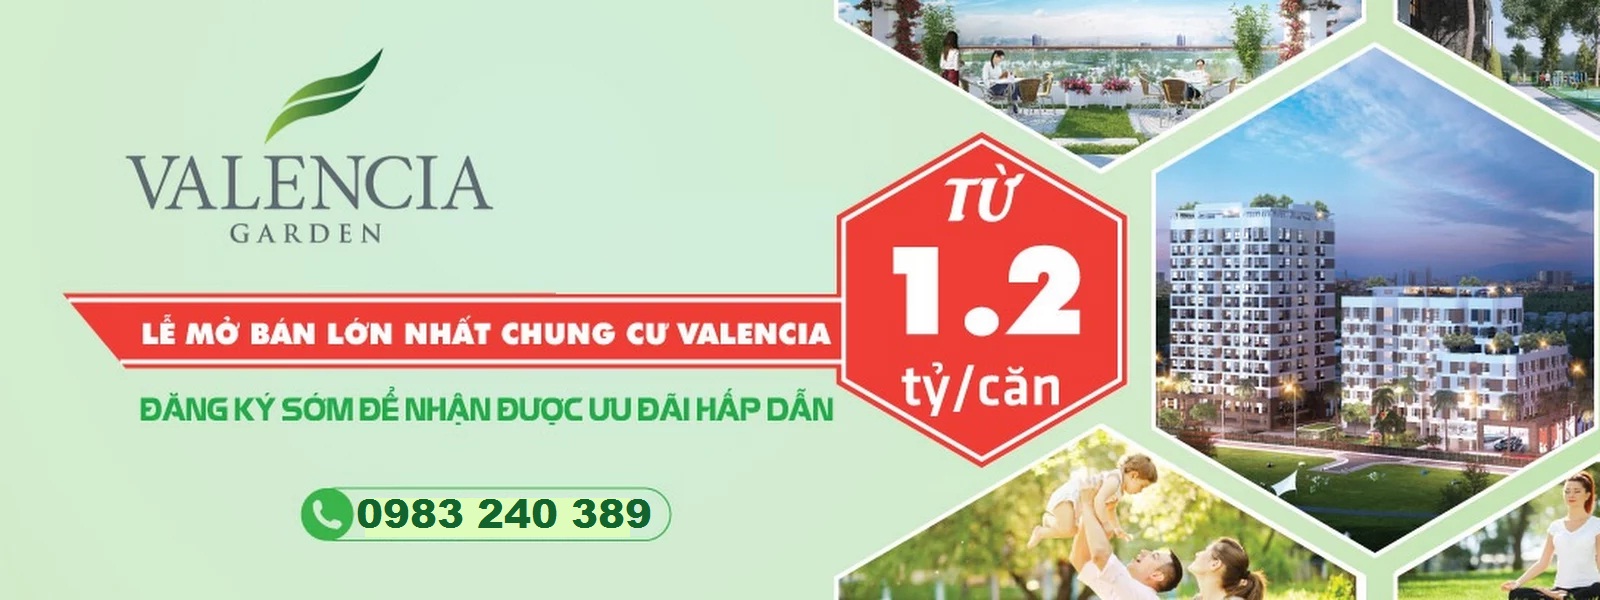 du-an-chung-cu-valencia-garden-viet-hung-ct19b-hai-duong-banner-quang-cao